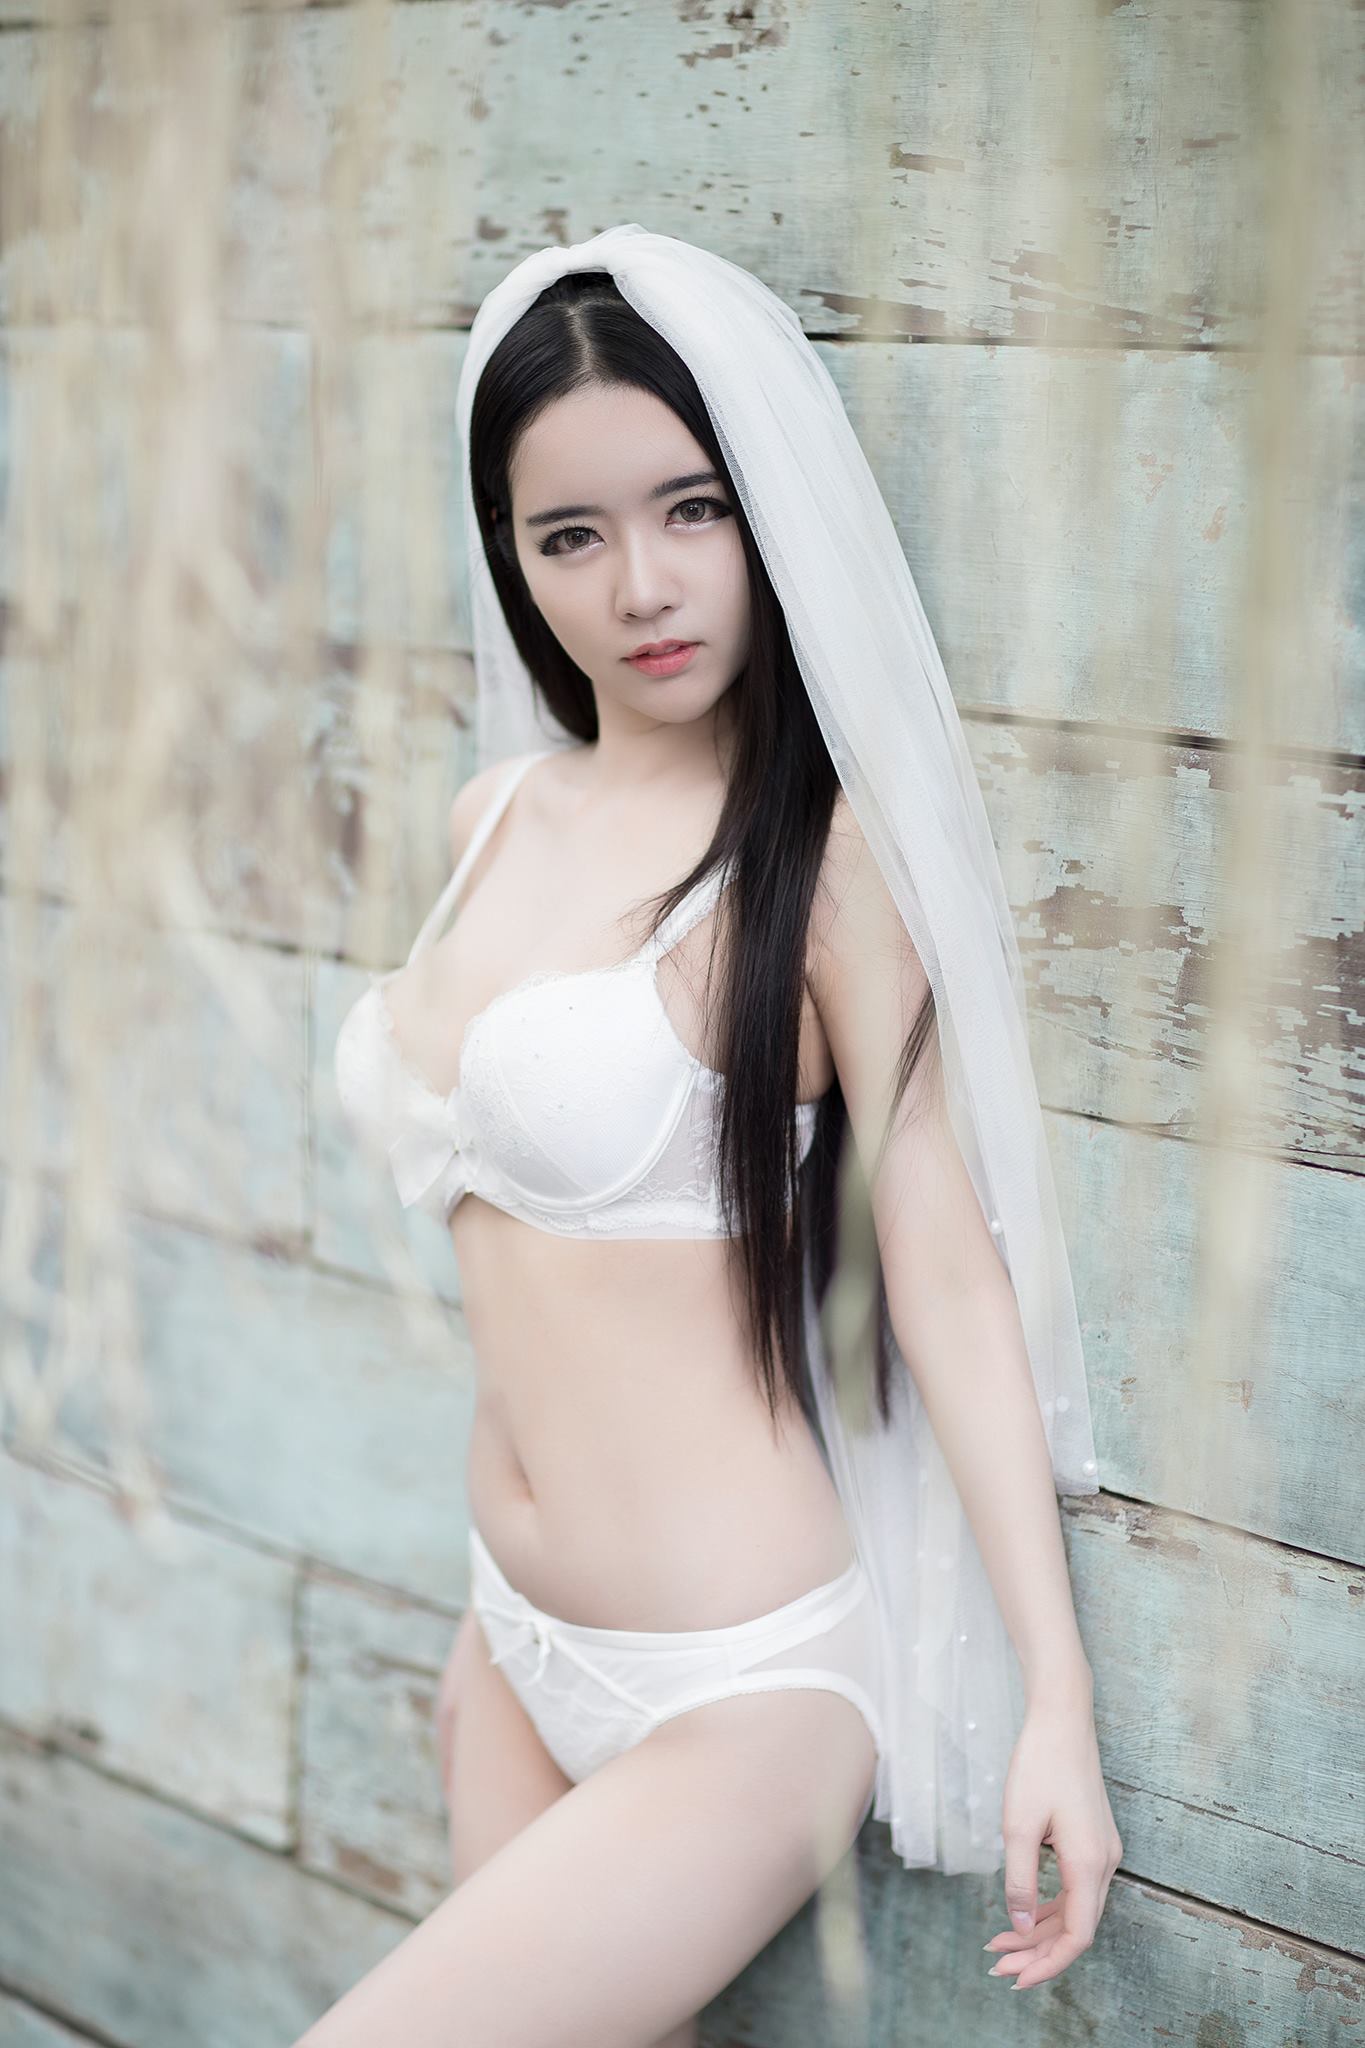 hot lingerie Asian girl